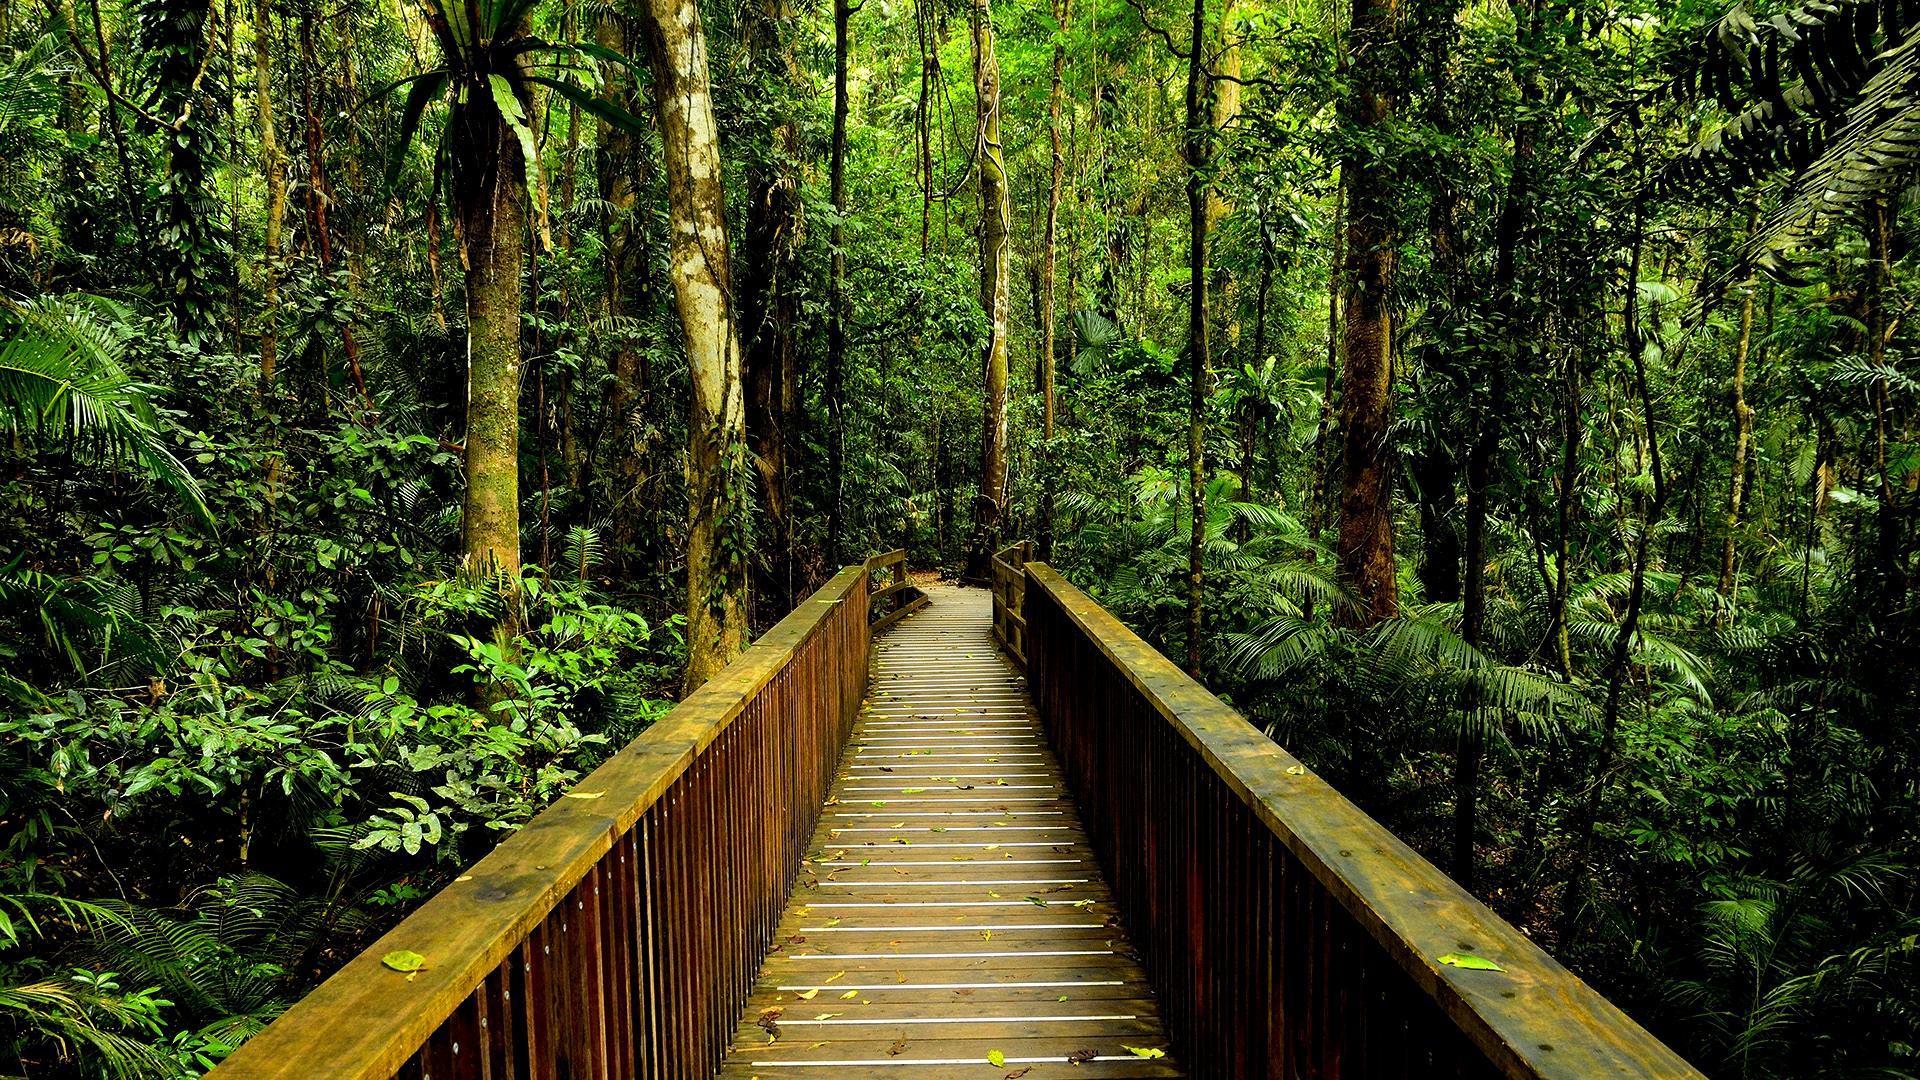 Rainforest Walkway HD desktop wallpapers : Widescreen : High Definition : Fullscreen